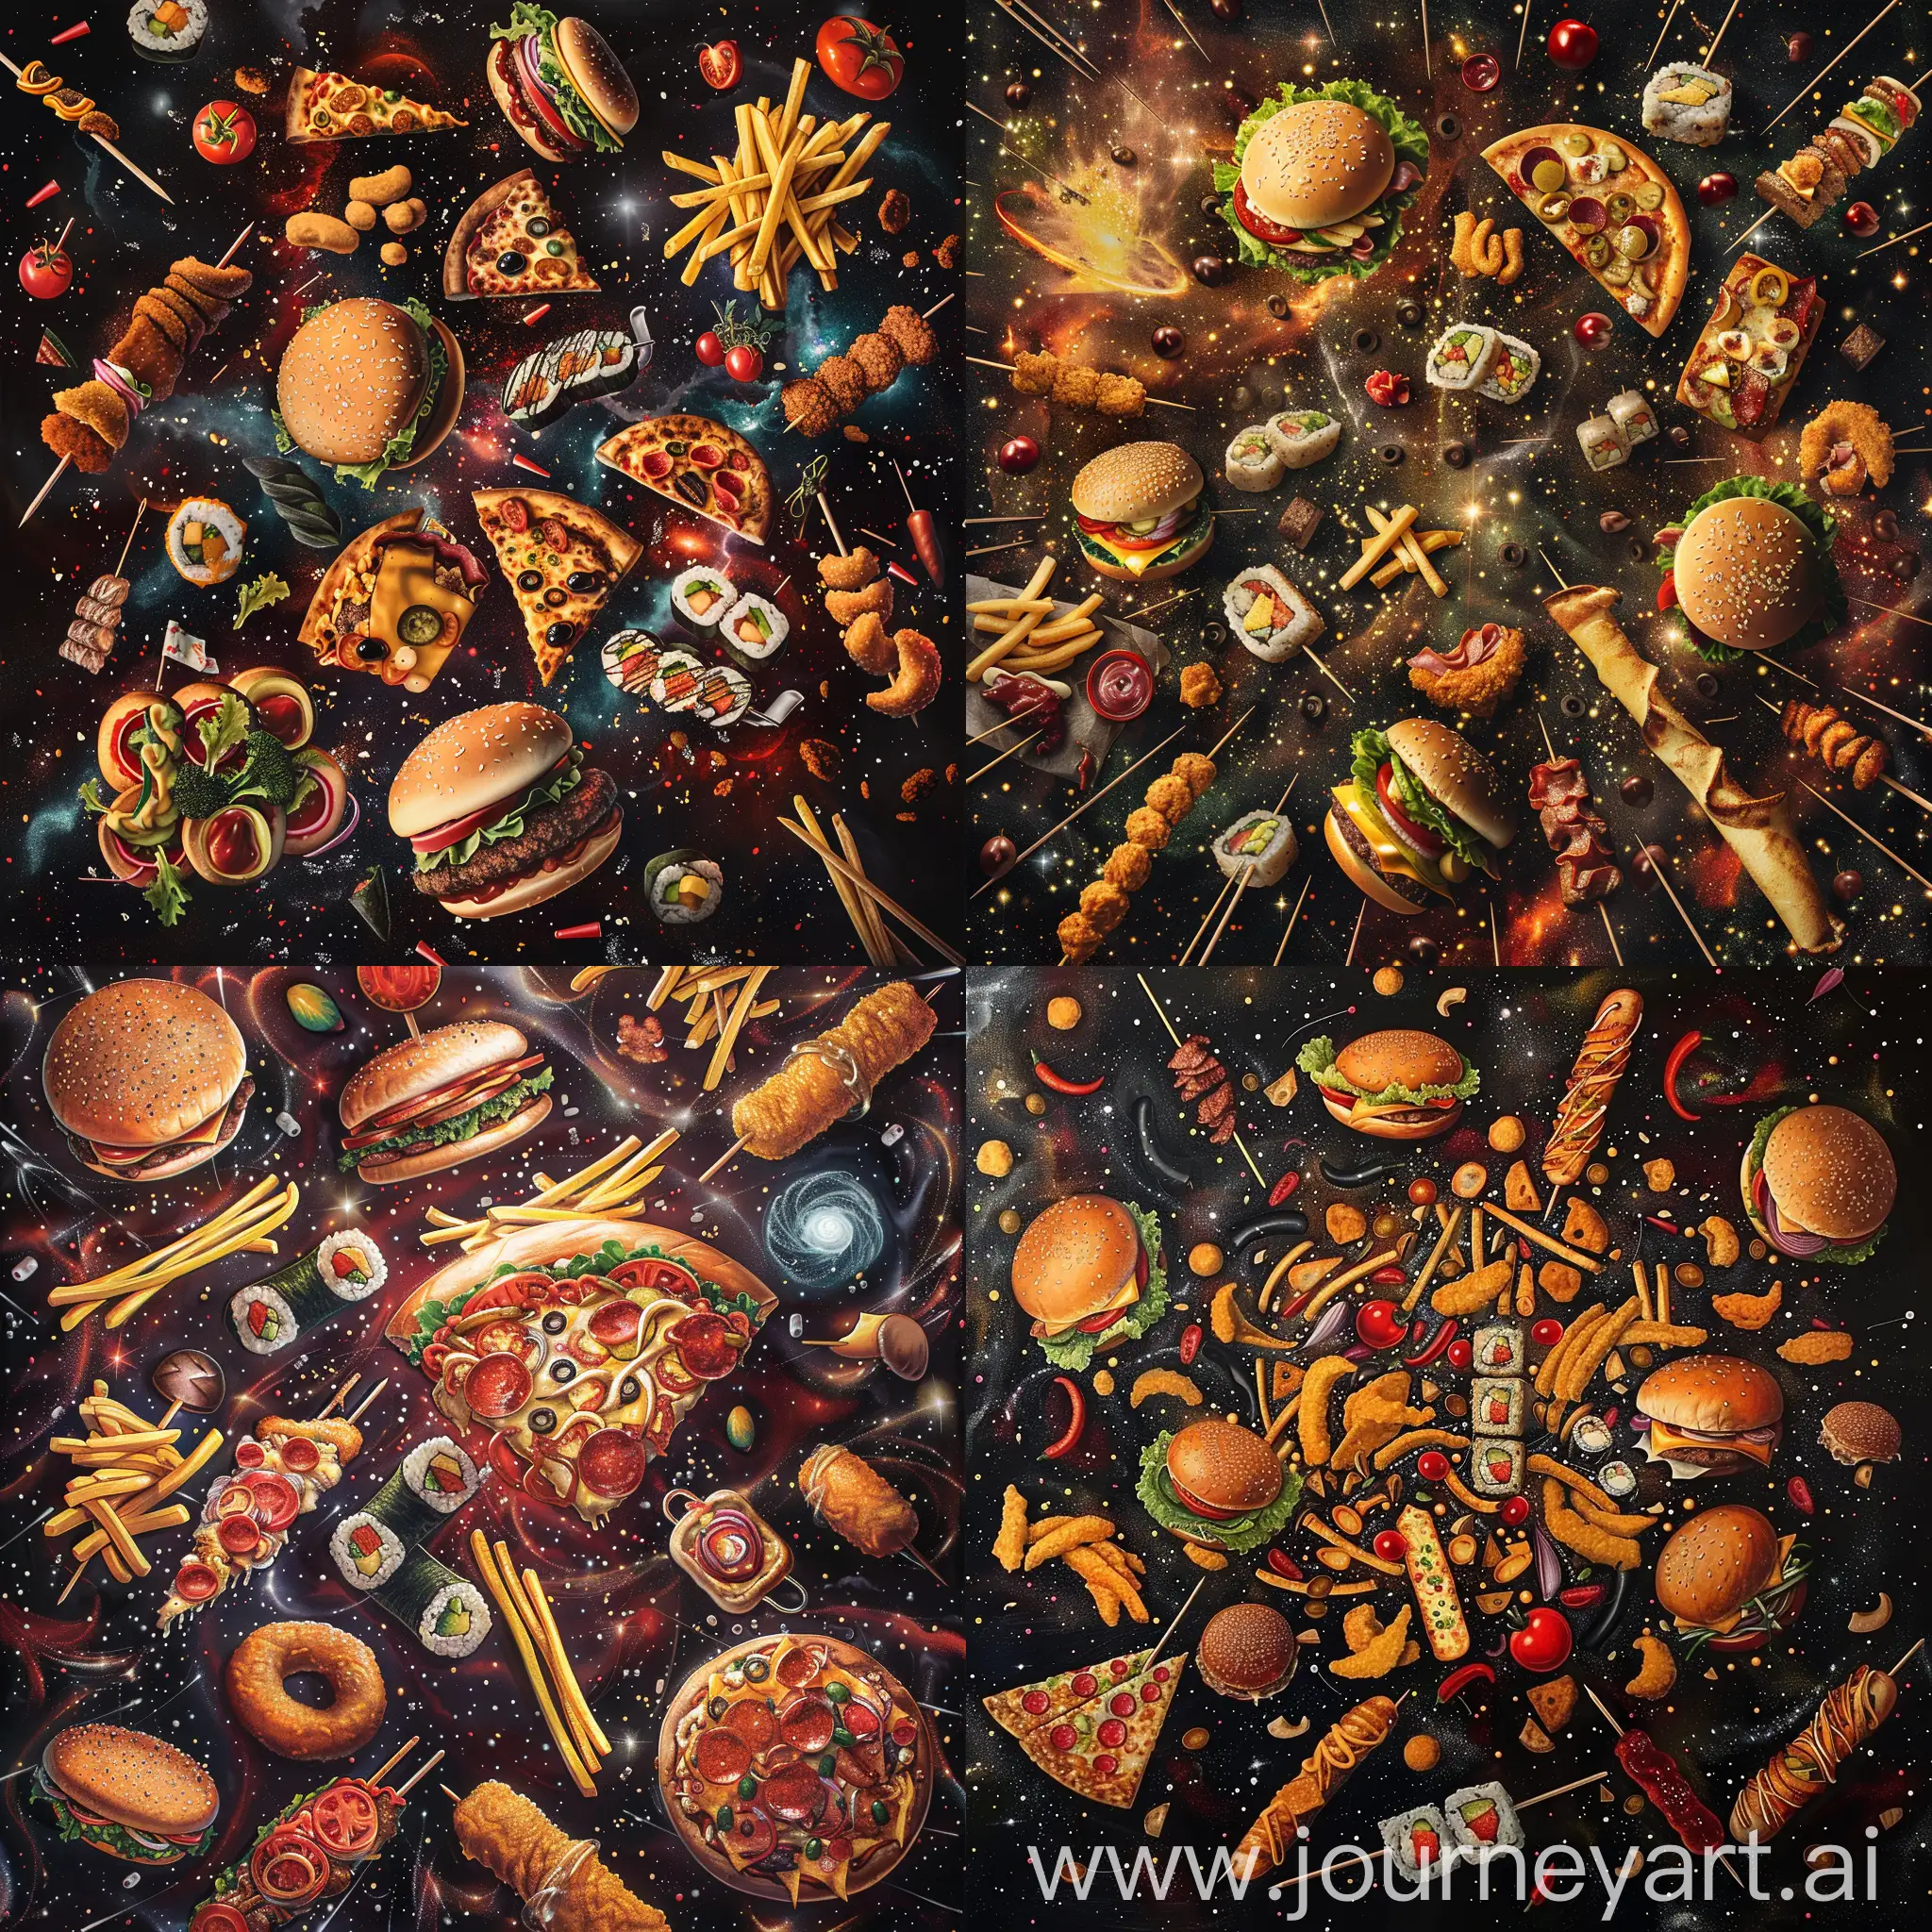 галактика состоящая из бургеров, пиццы, японских роллов, картошки фри, наггетсов, шашлыка